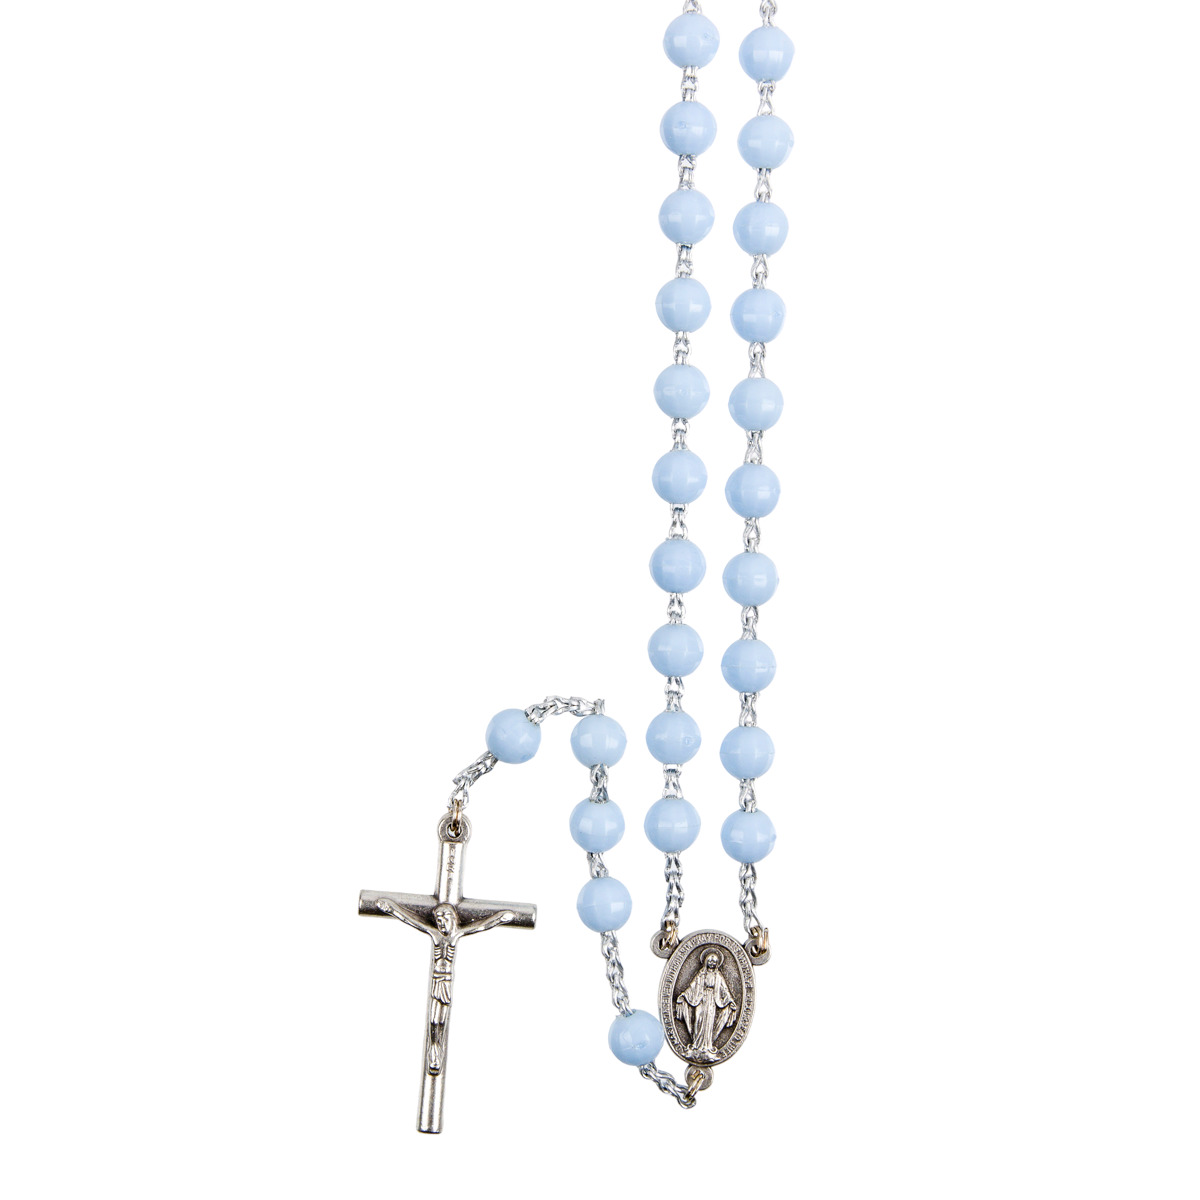 Chapelet sur chaine indécrochable couleur argentée grains en plastique ronds Ø 7 mm, longueur au cœur 31 cm, croix avec Christ.